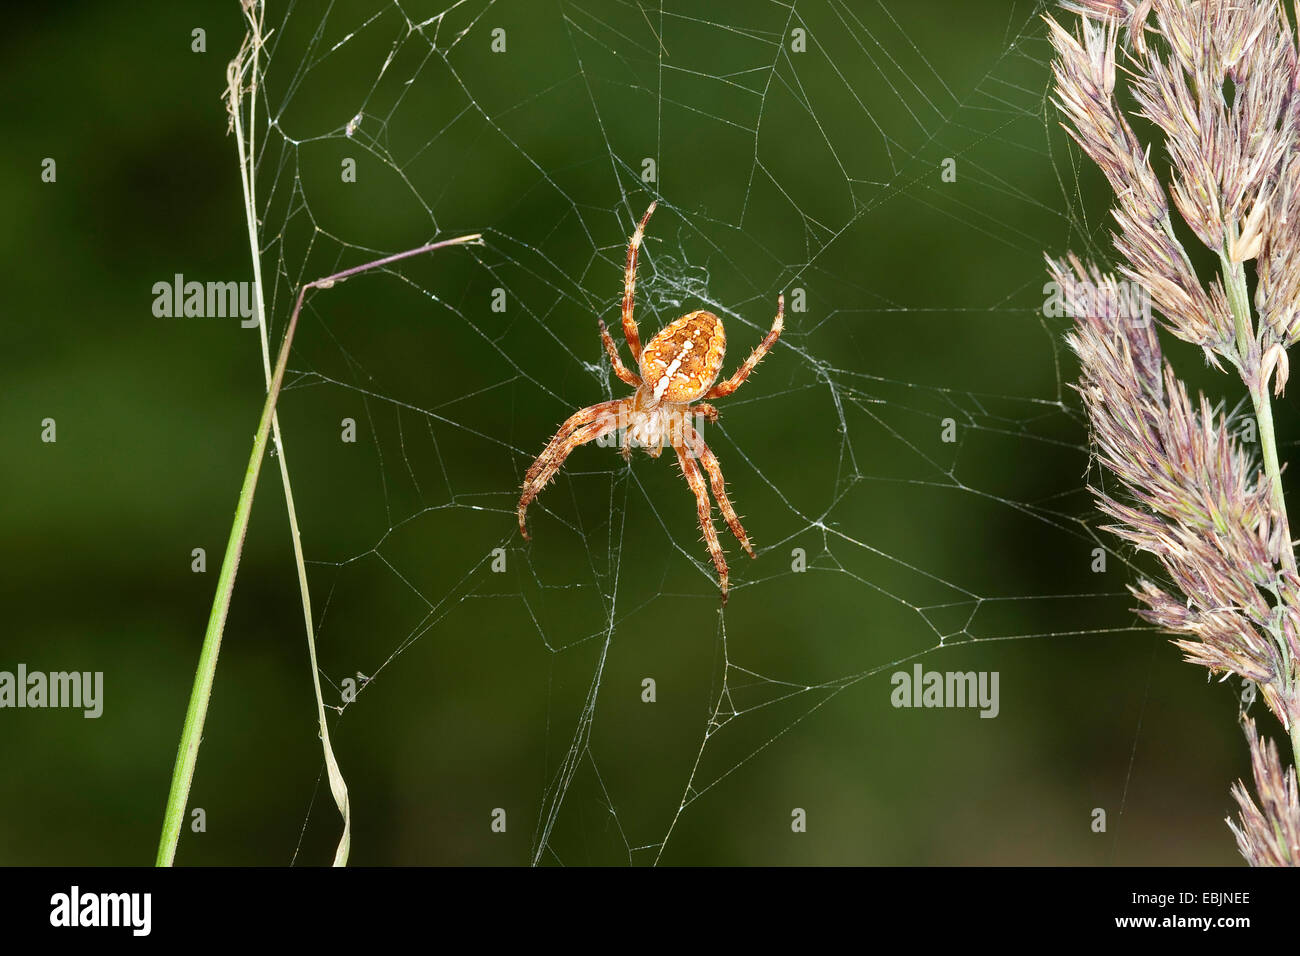 Croce orbweaver, giardino europeo spider, cross spider (Araneus diadematus), in agguato nel suo web tra i fili di erba, Germania Foto Stock